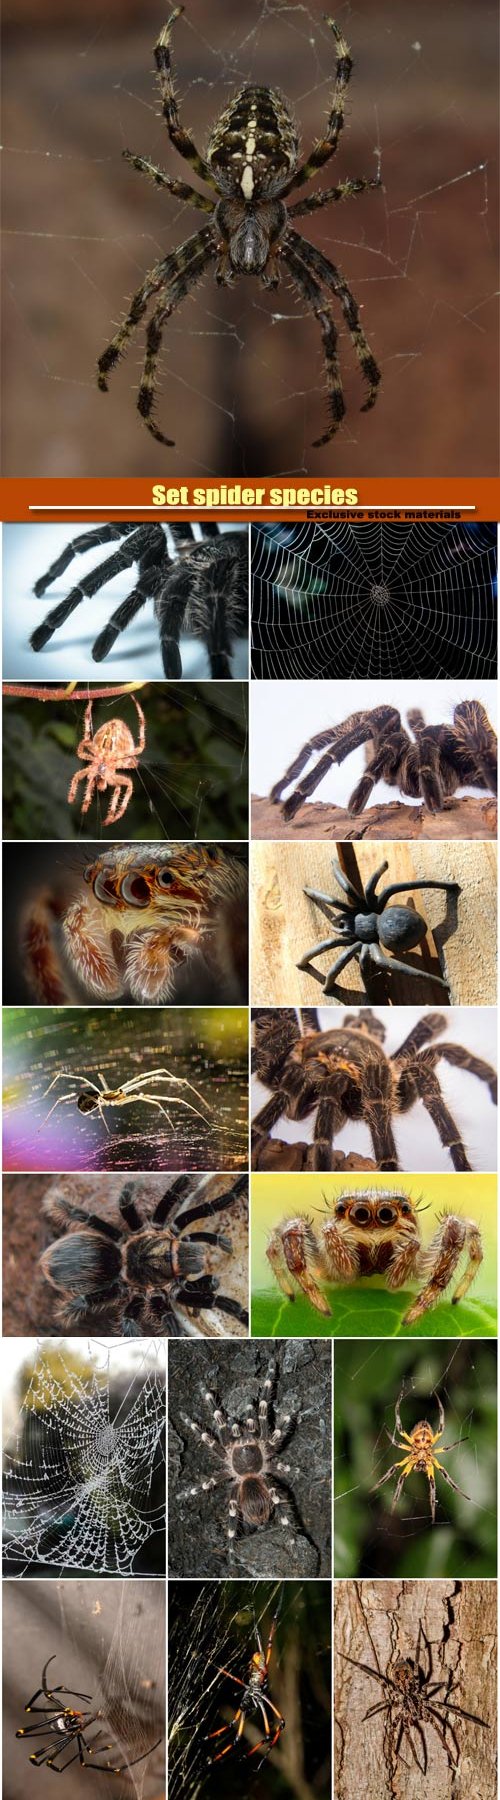 Set spider species